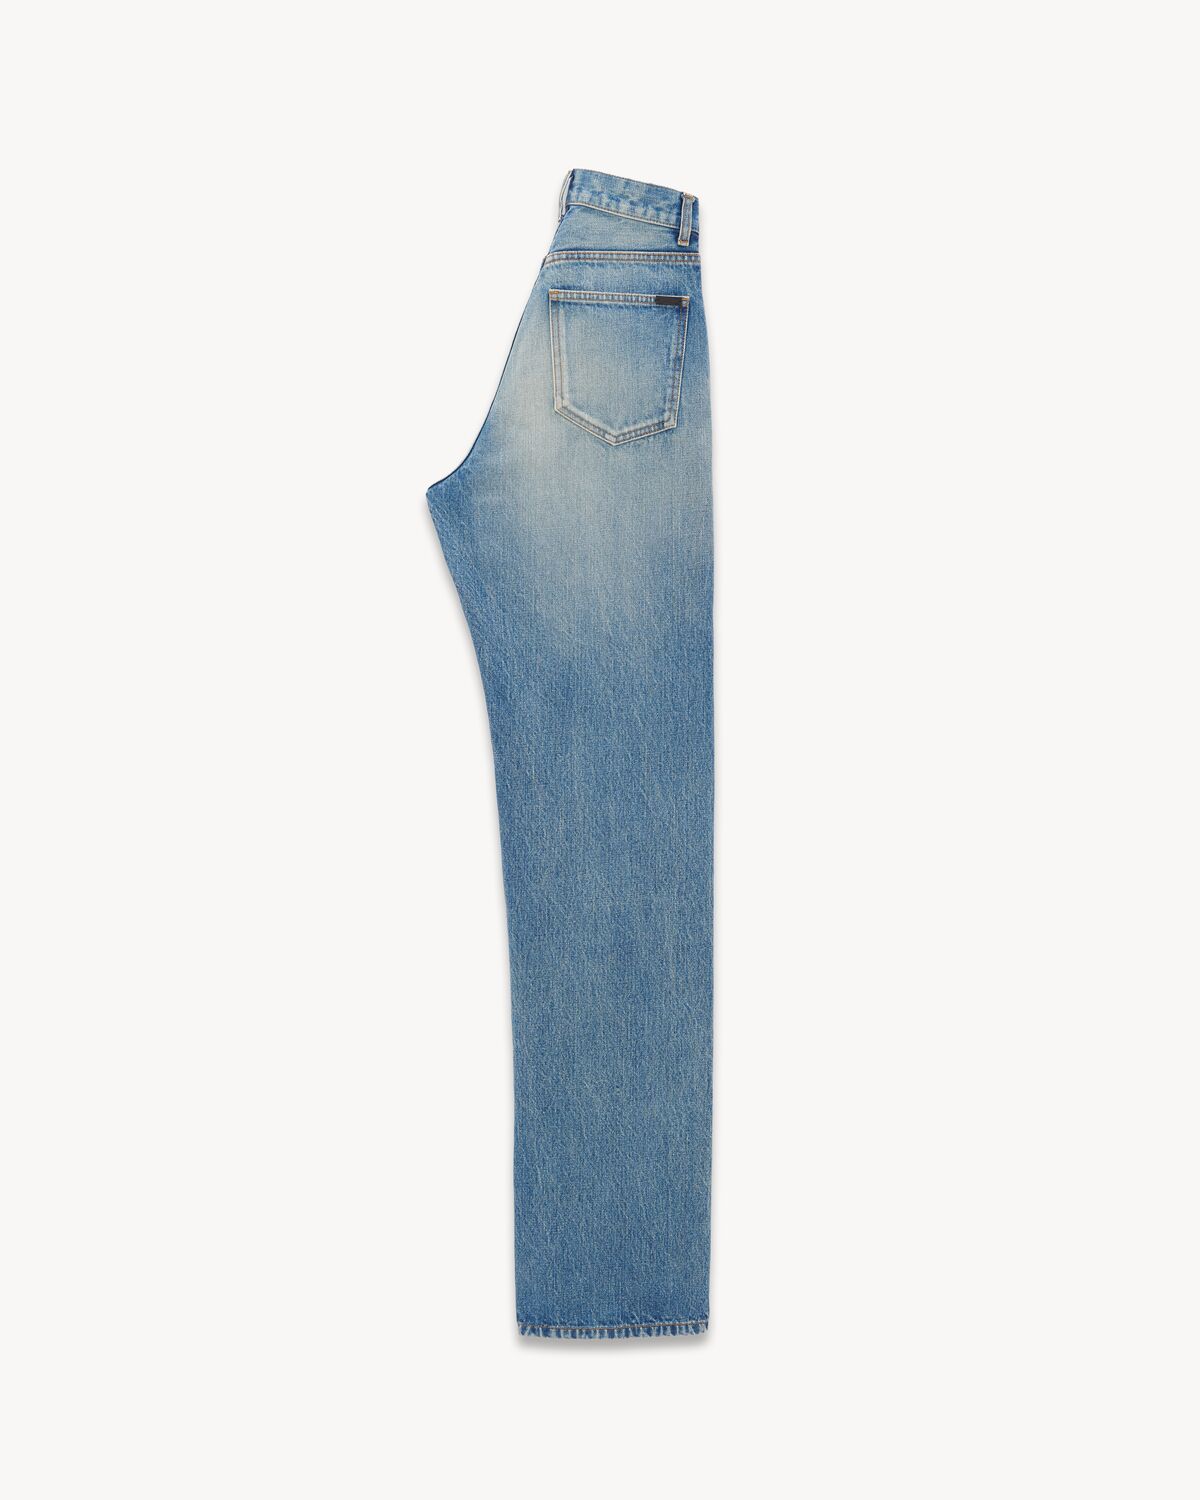 V-waist long baggy jeans in vintage blue denim